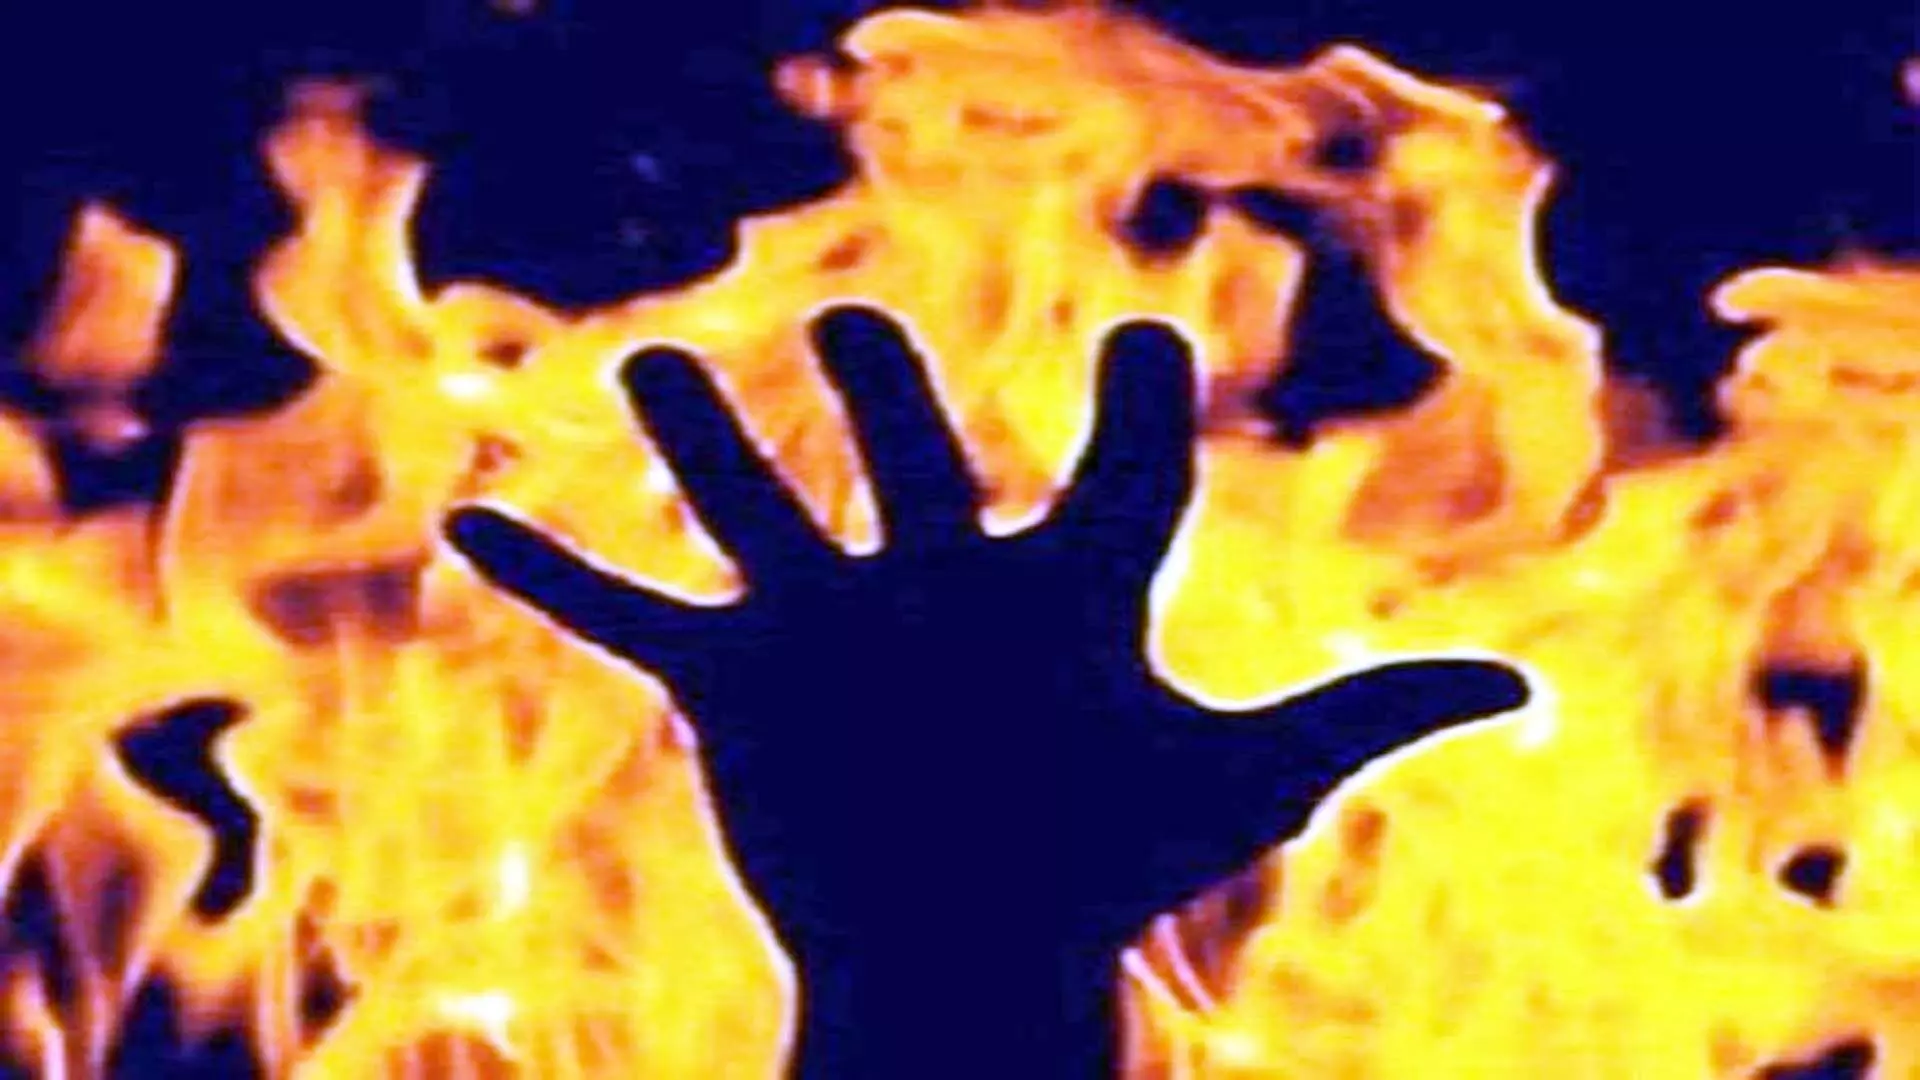 Himachal : बिस्तर में आग लगने से व्यक्ति जिंदा जल गया